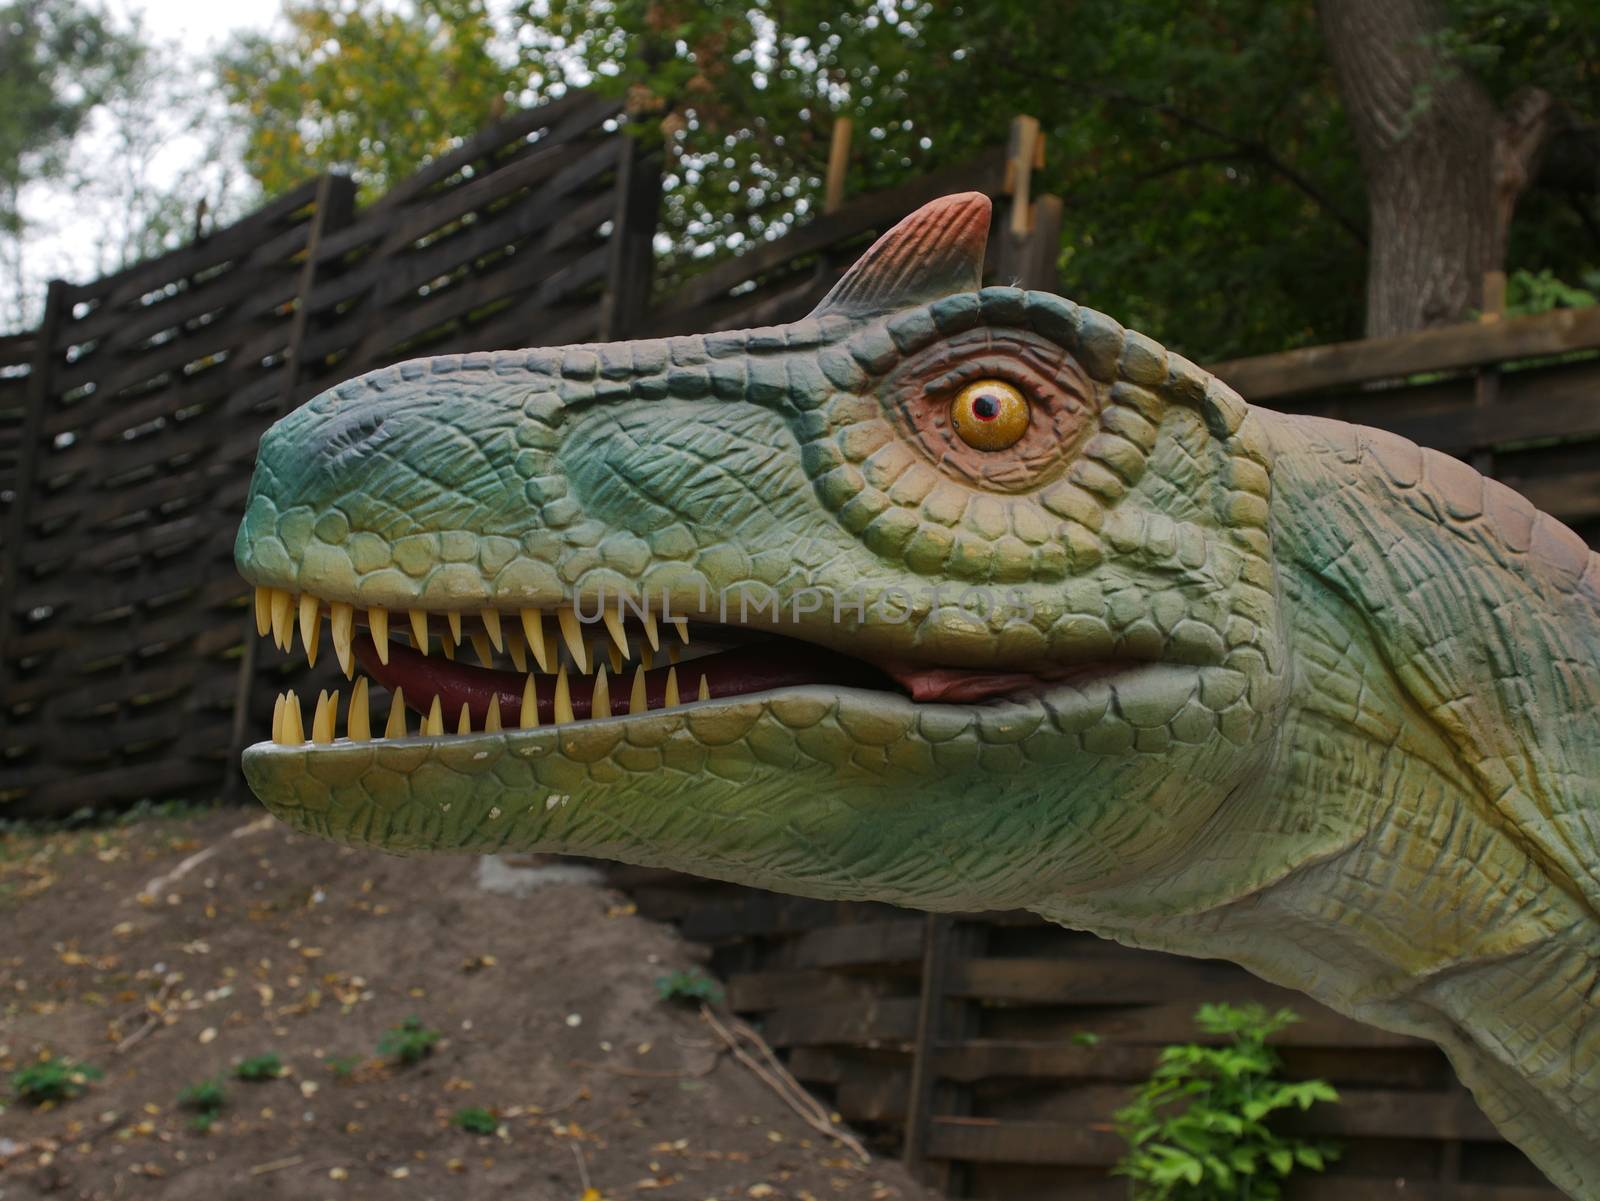 Dinosaurs figures in local autumn park, Ukraine